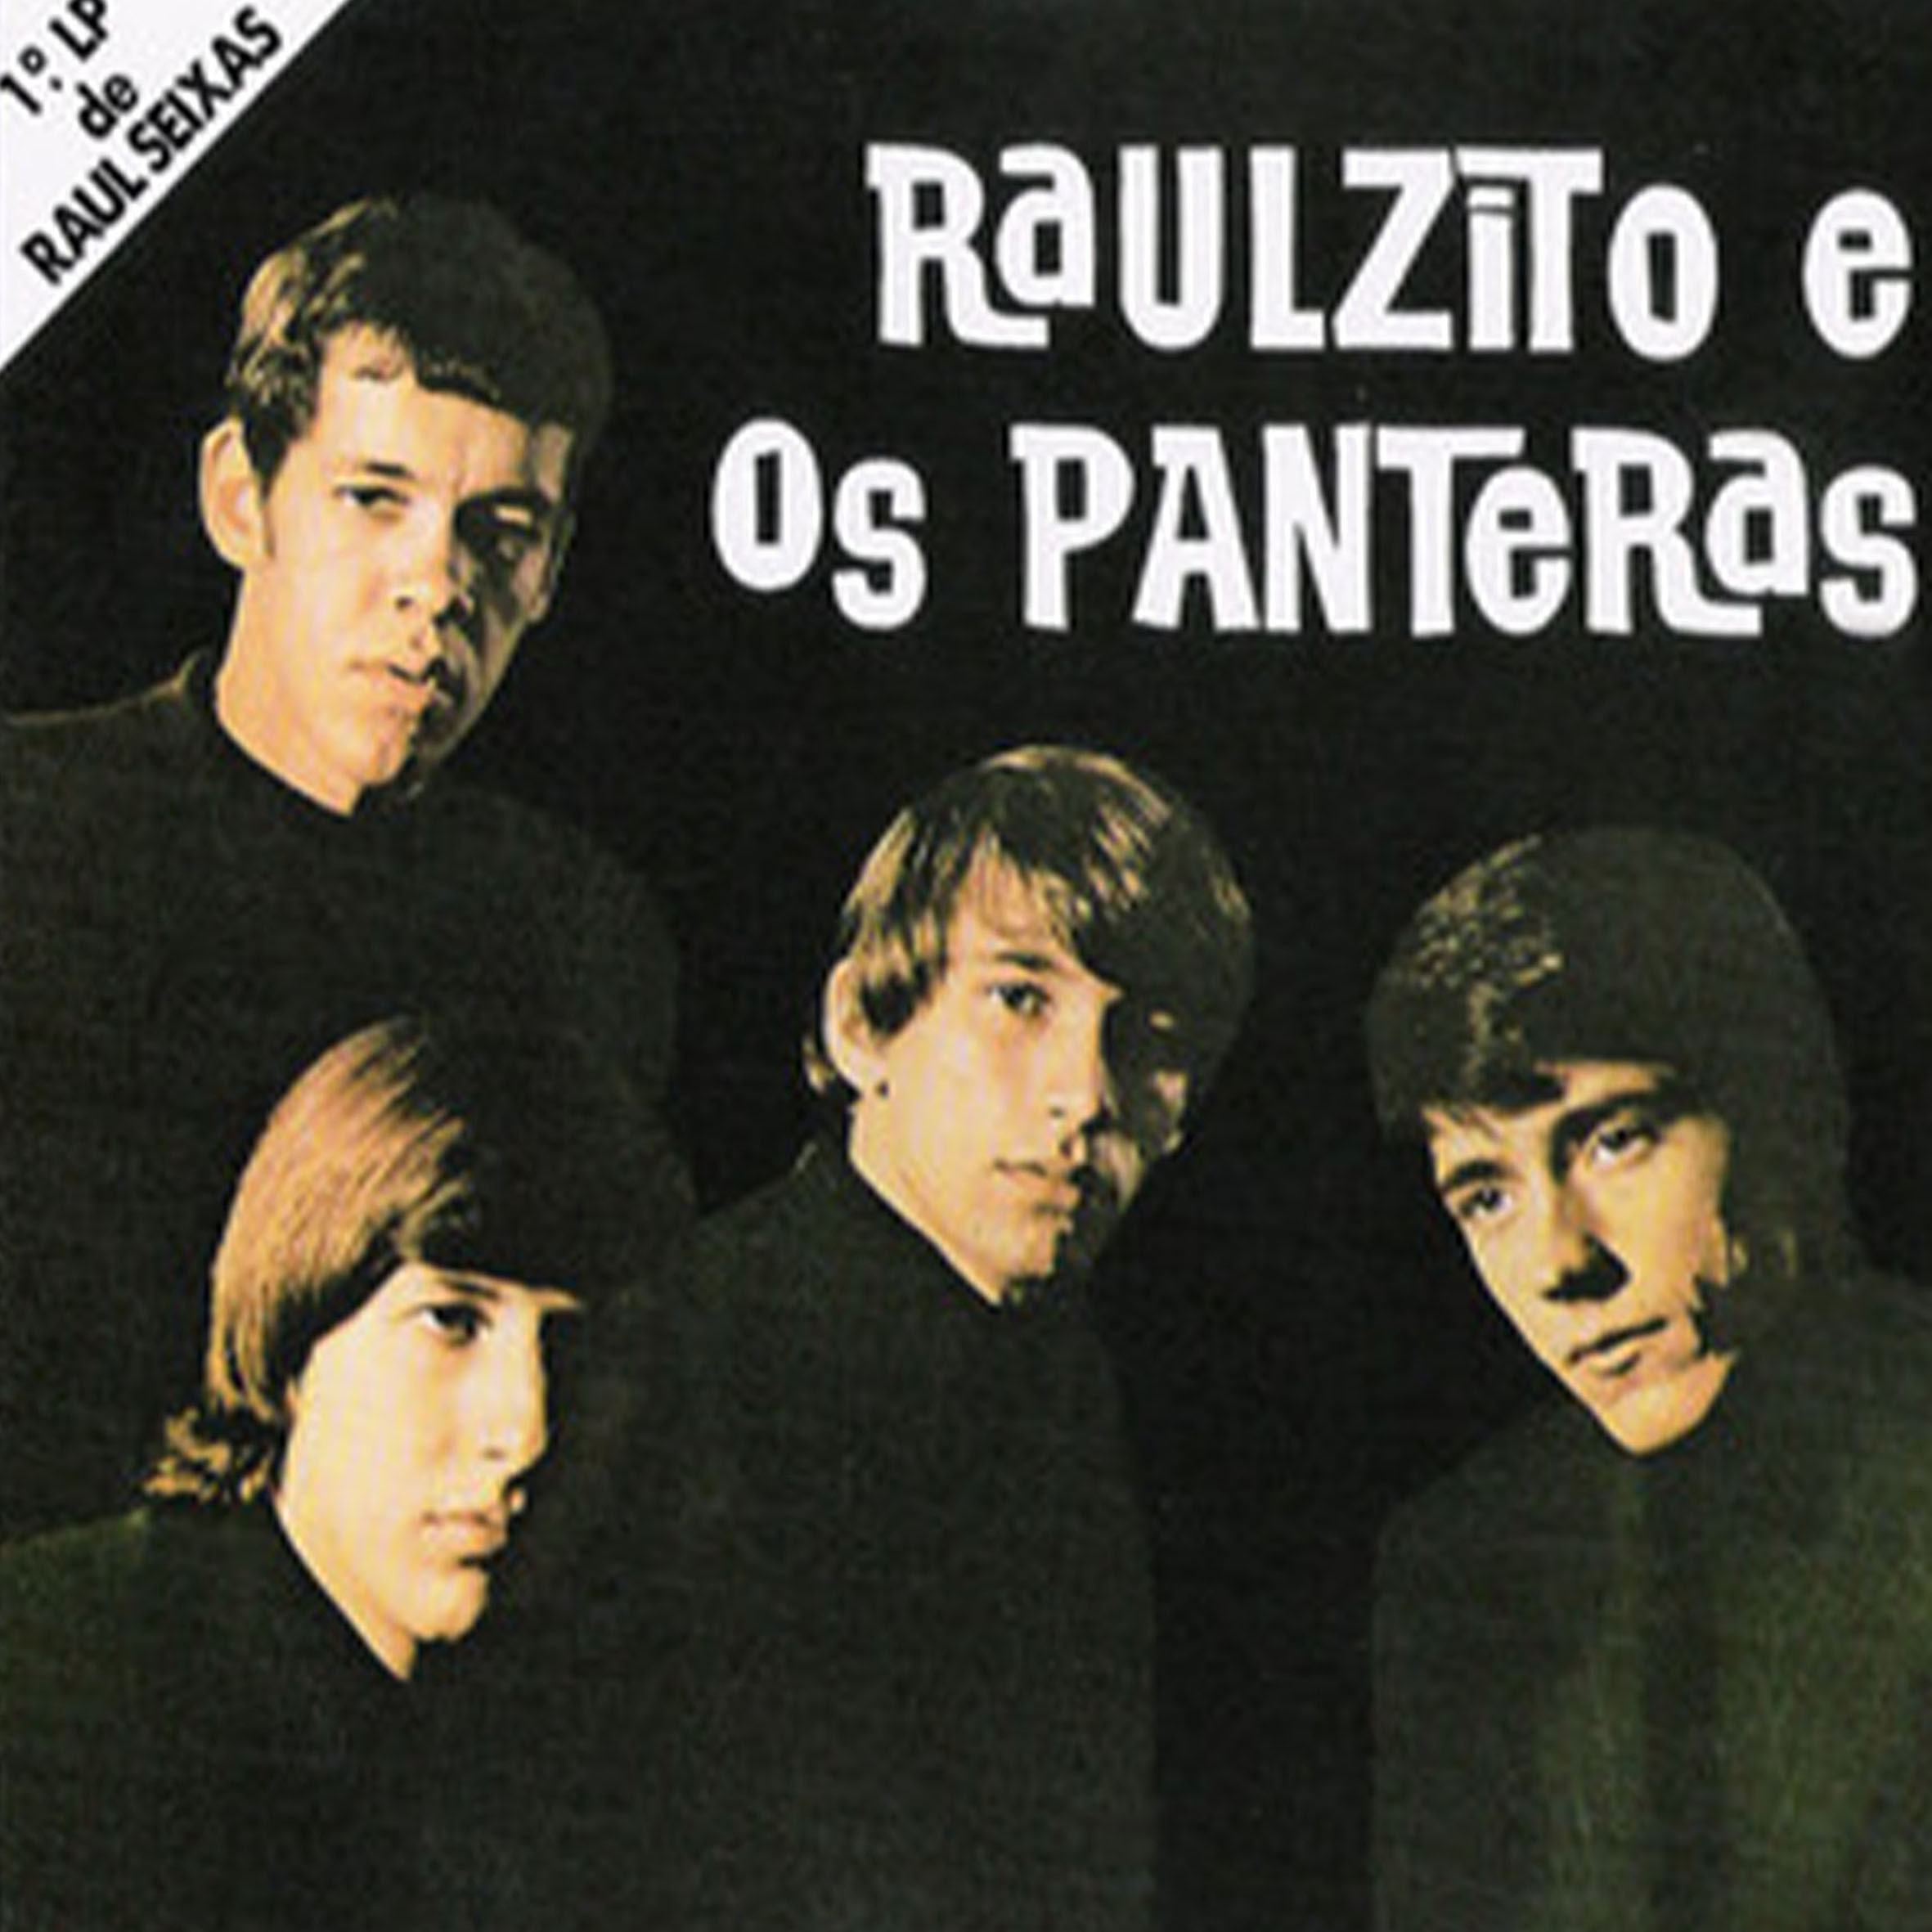 CD - Raul Seixas - Raulzito E Os Panteras (Lacrado)